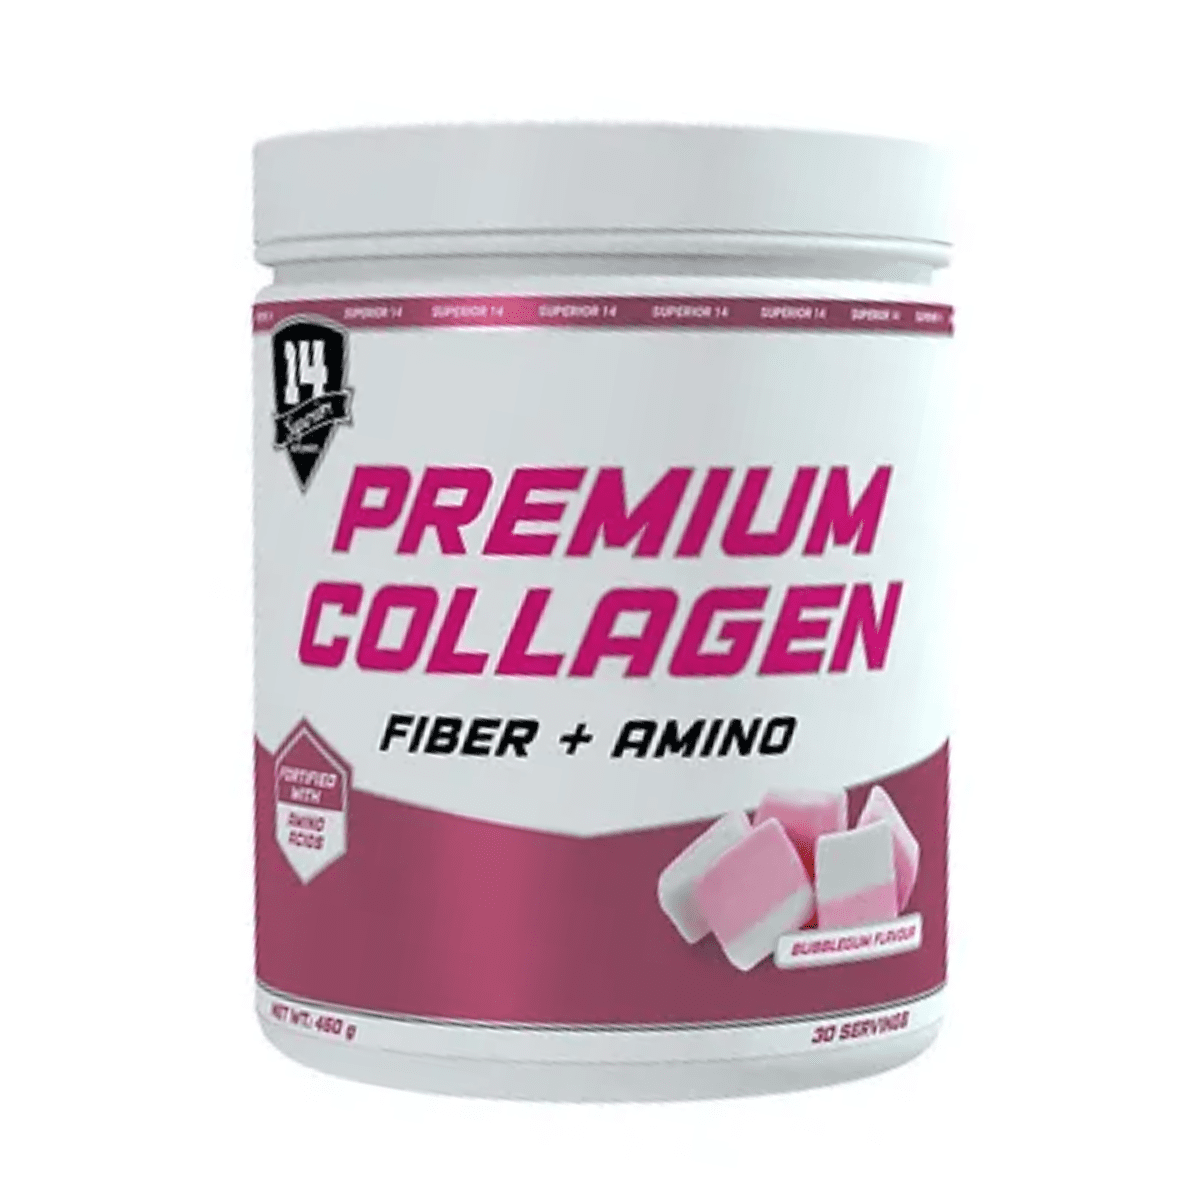 Superior Premium Collagen